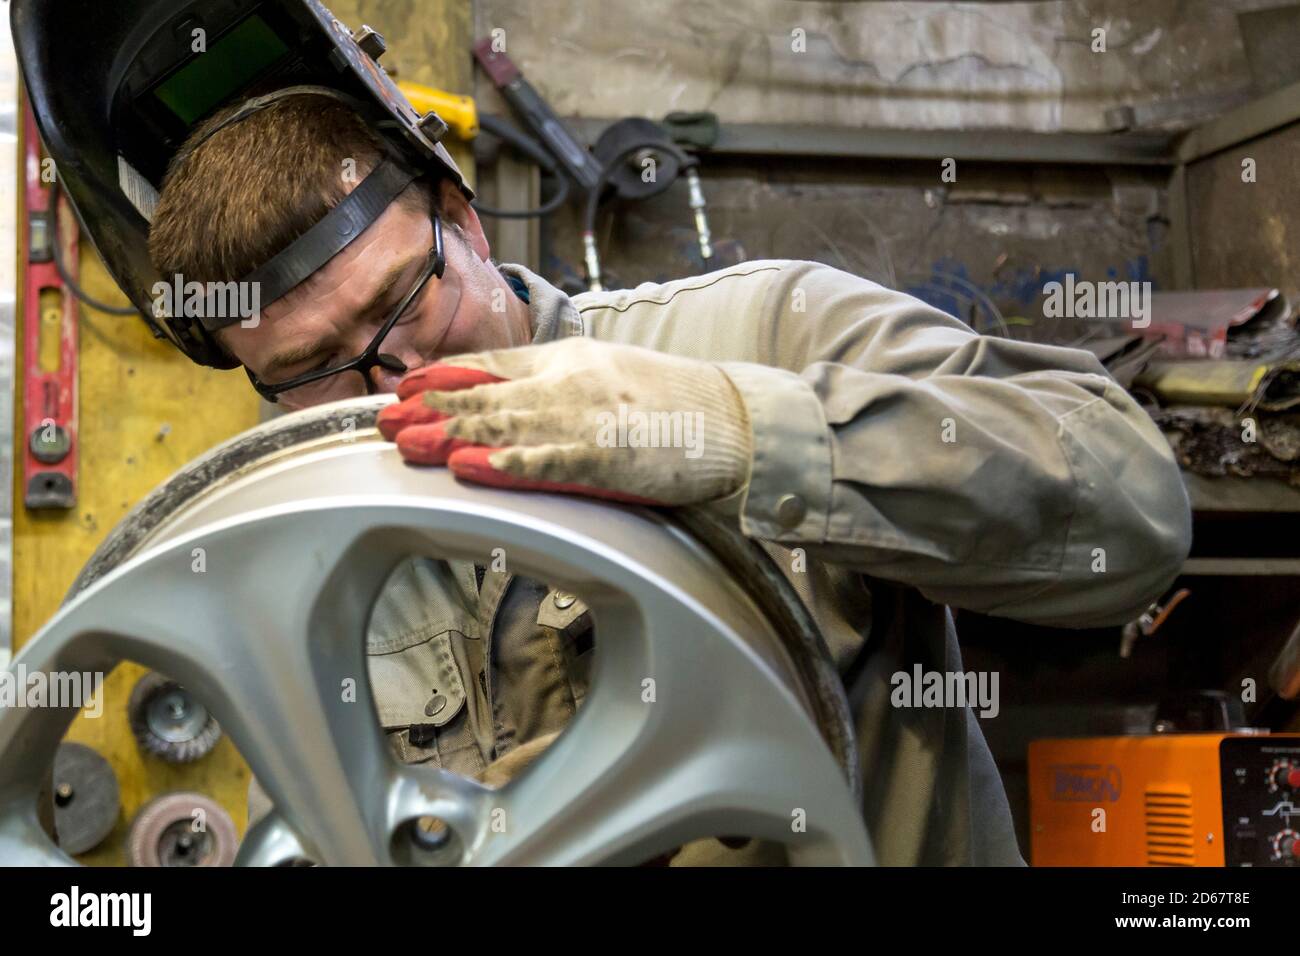 Welding a wheel rim from an aluminum car Stock Photo